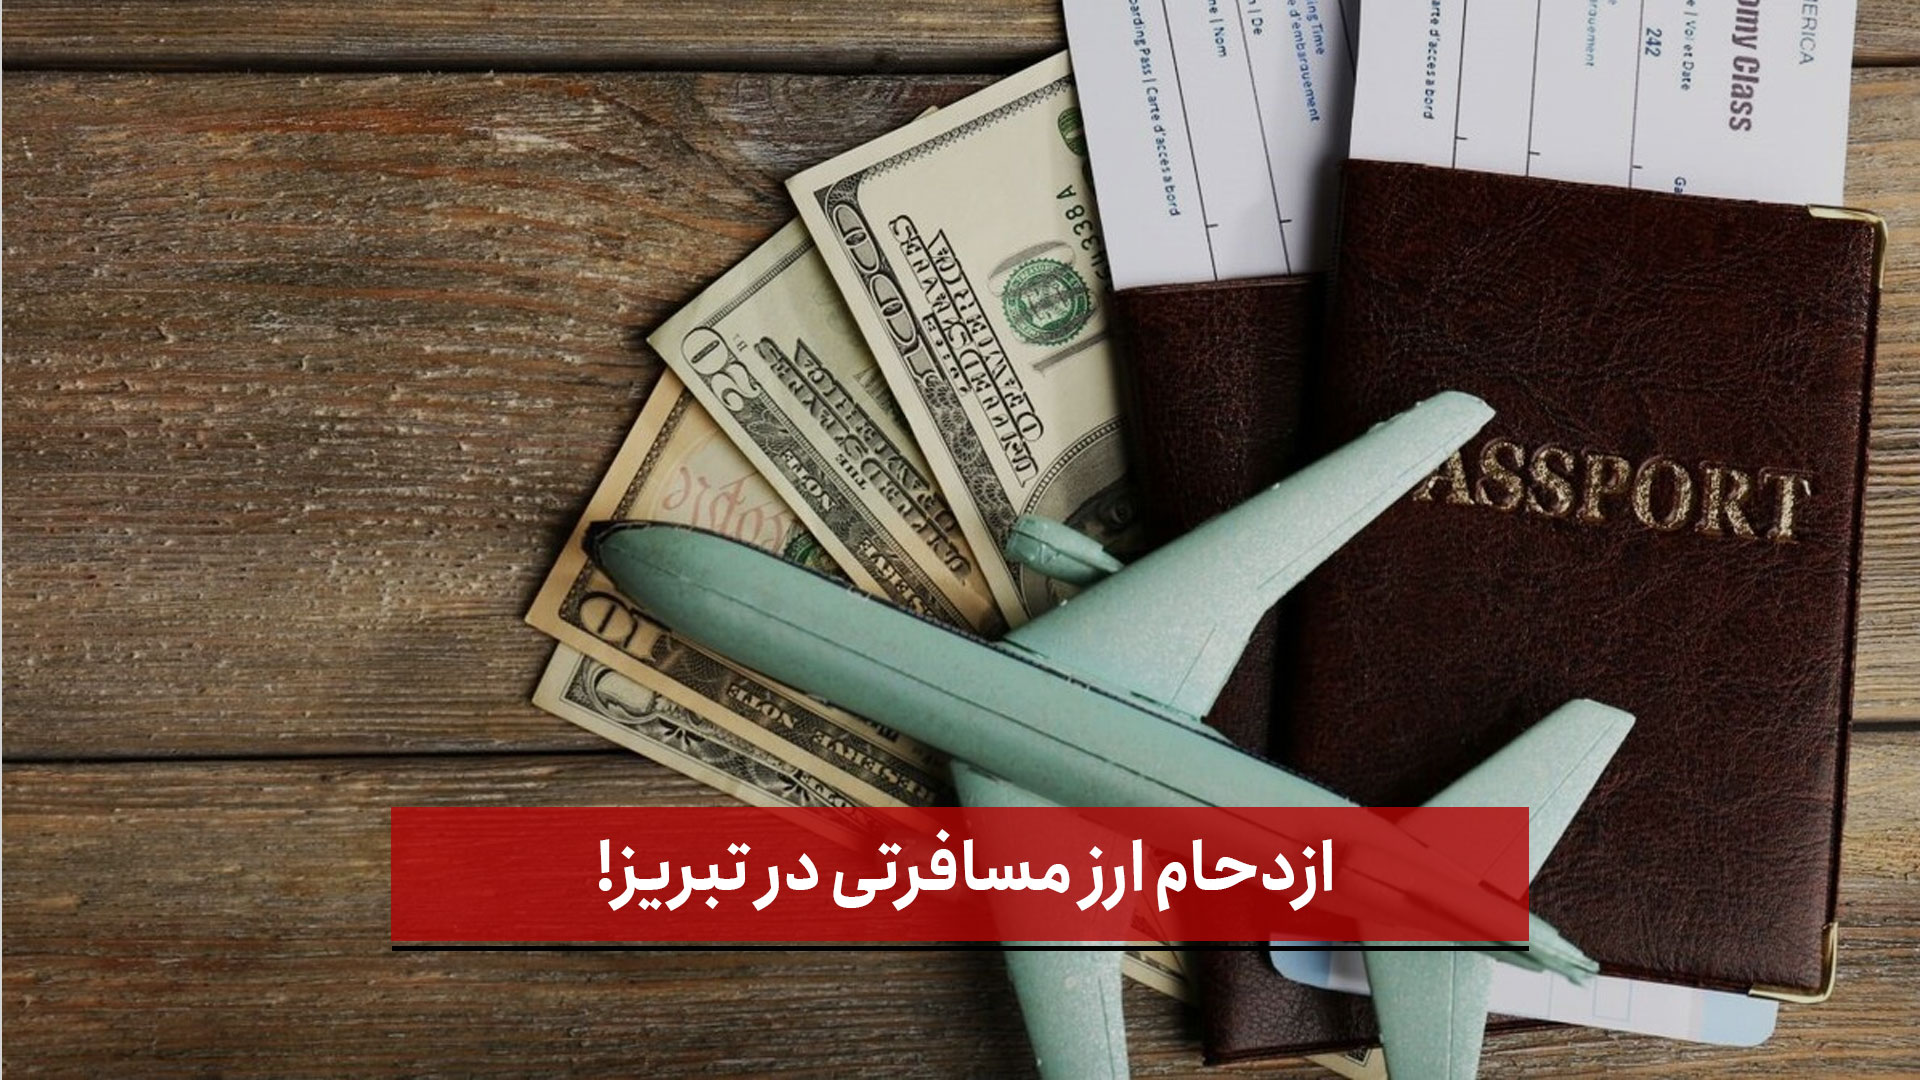 فیلم | ازدحام ارز مسافرتی در تبریز!